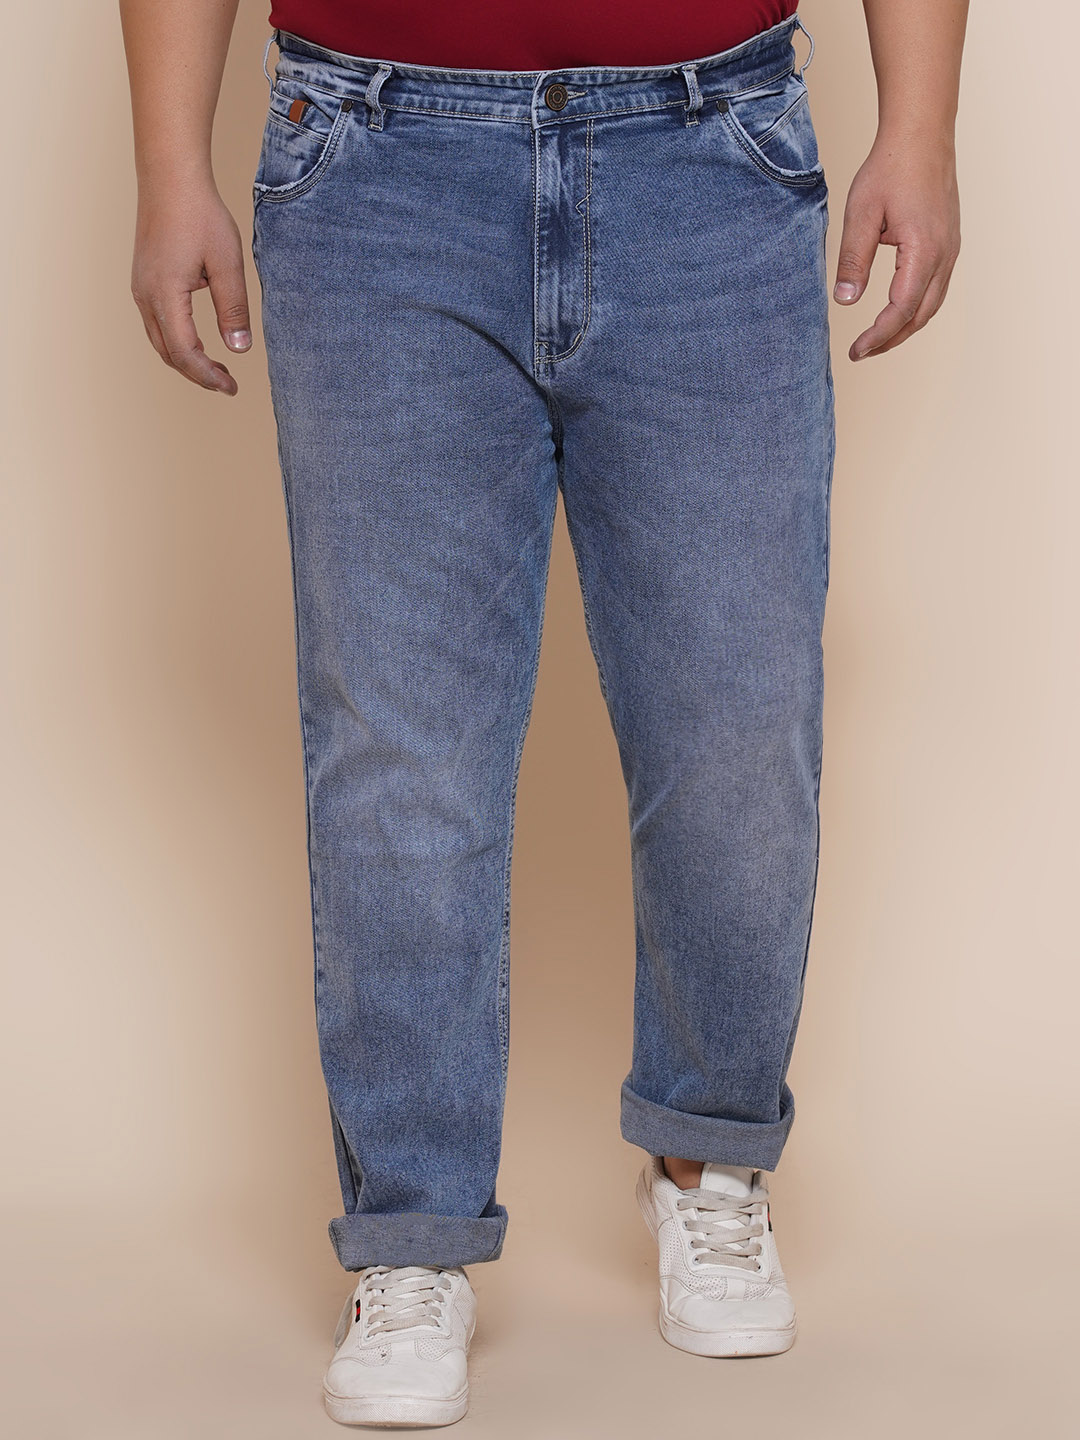 bottomwear/jeans/EJPJ25085/ejpj25085-1.jpg